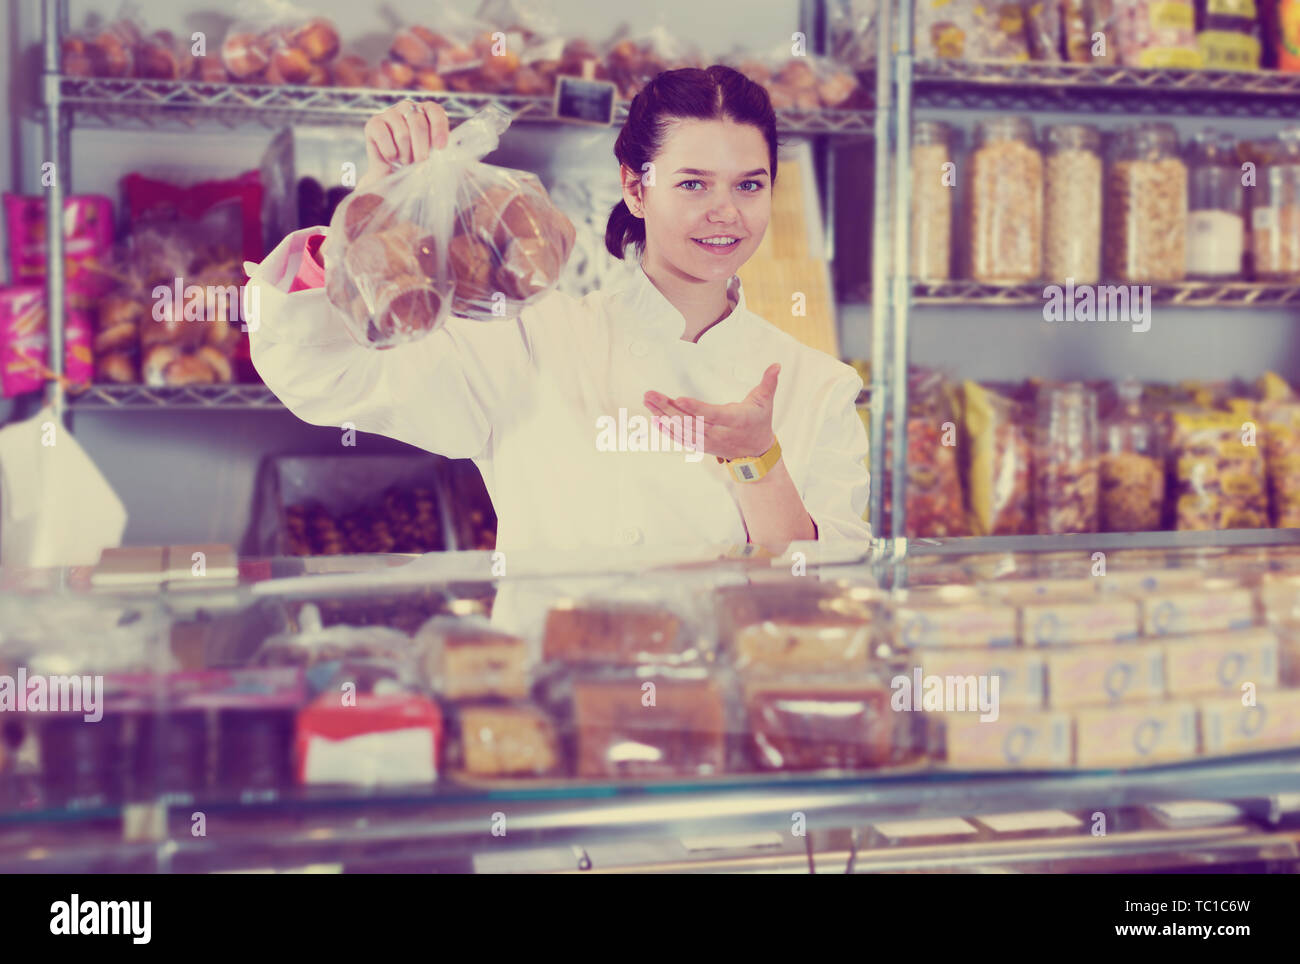 Jeune vendeur positive en uniforme blanc avec des cookies à afficher Banque D'Images